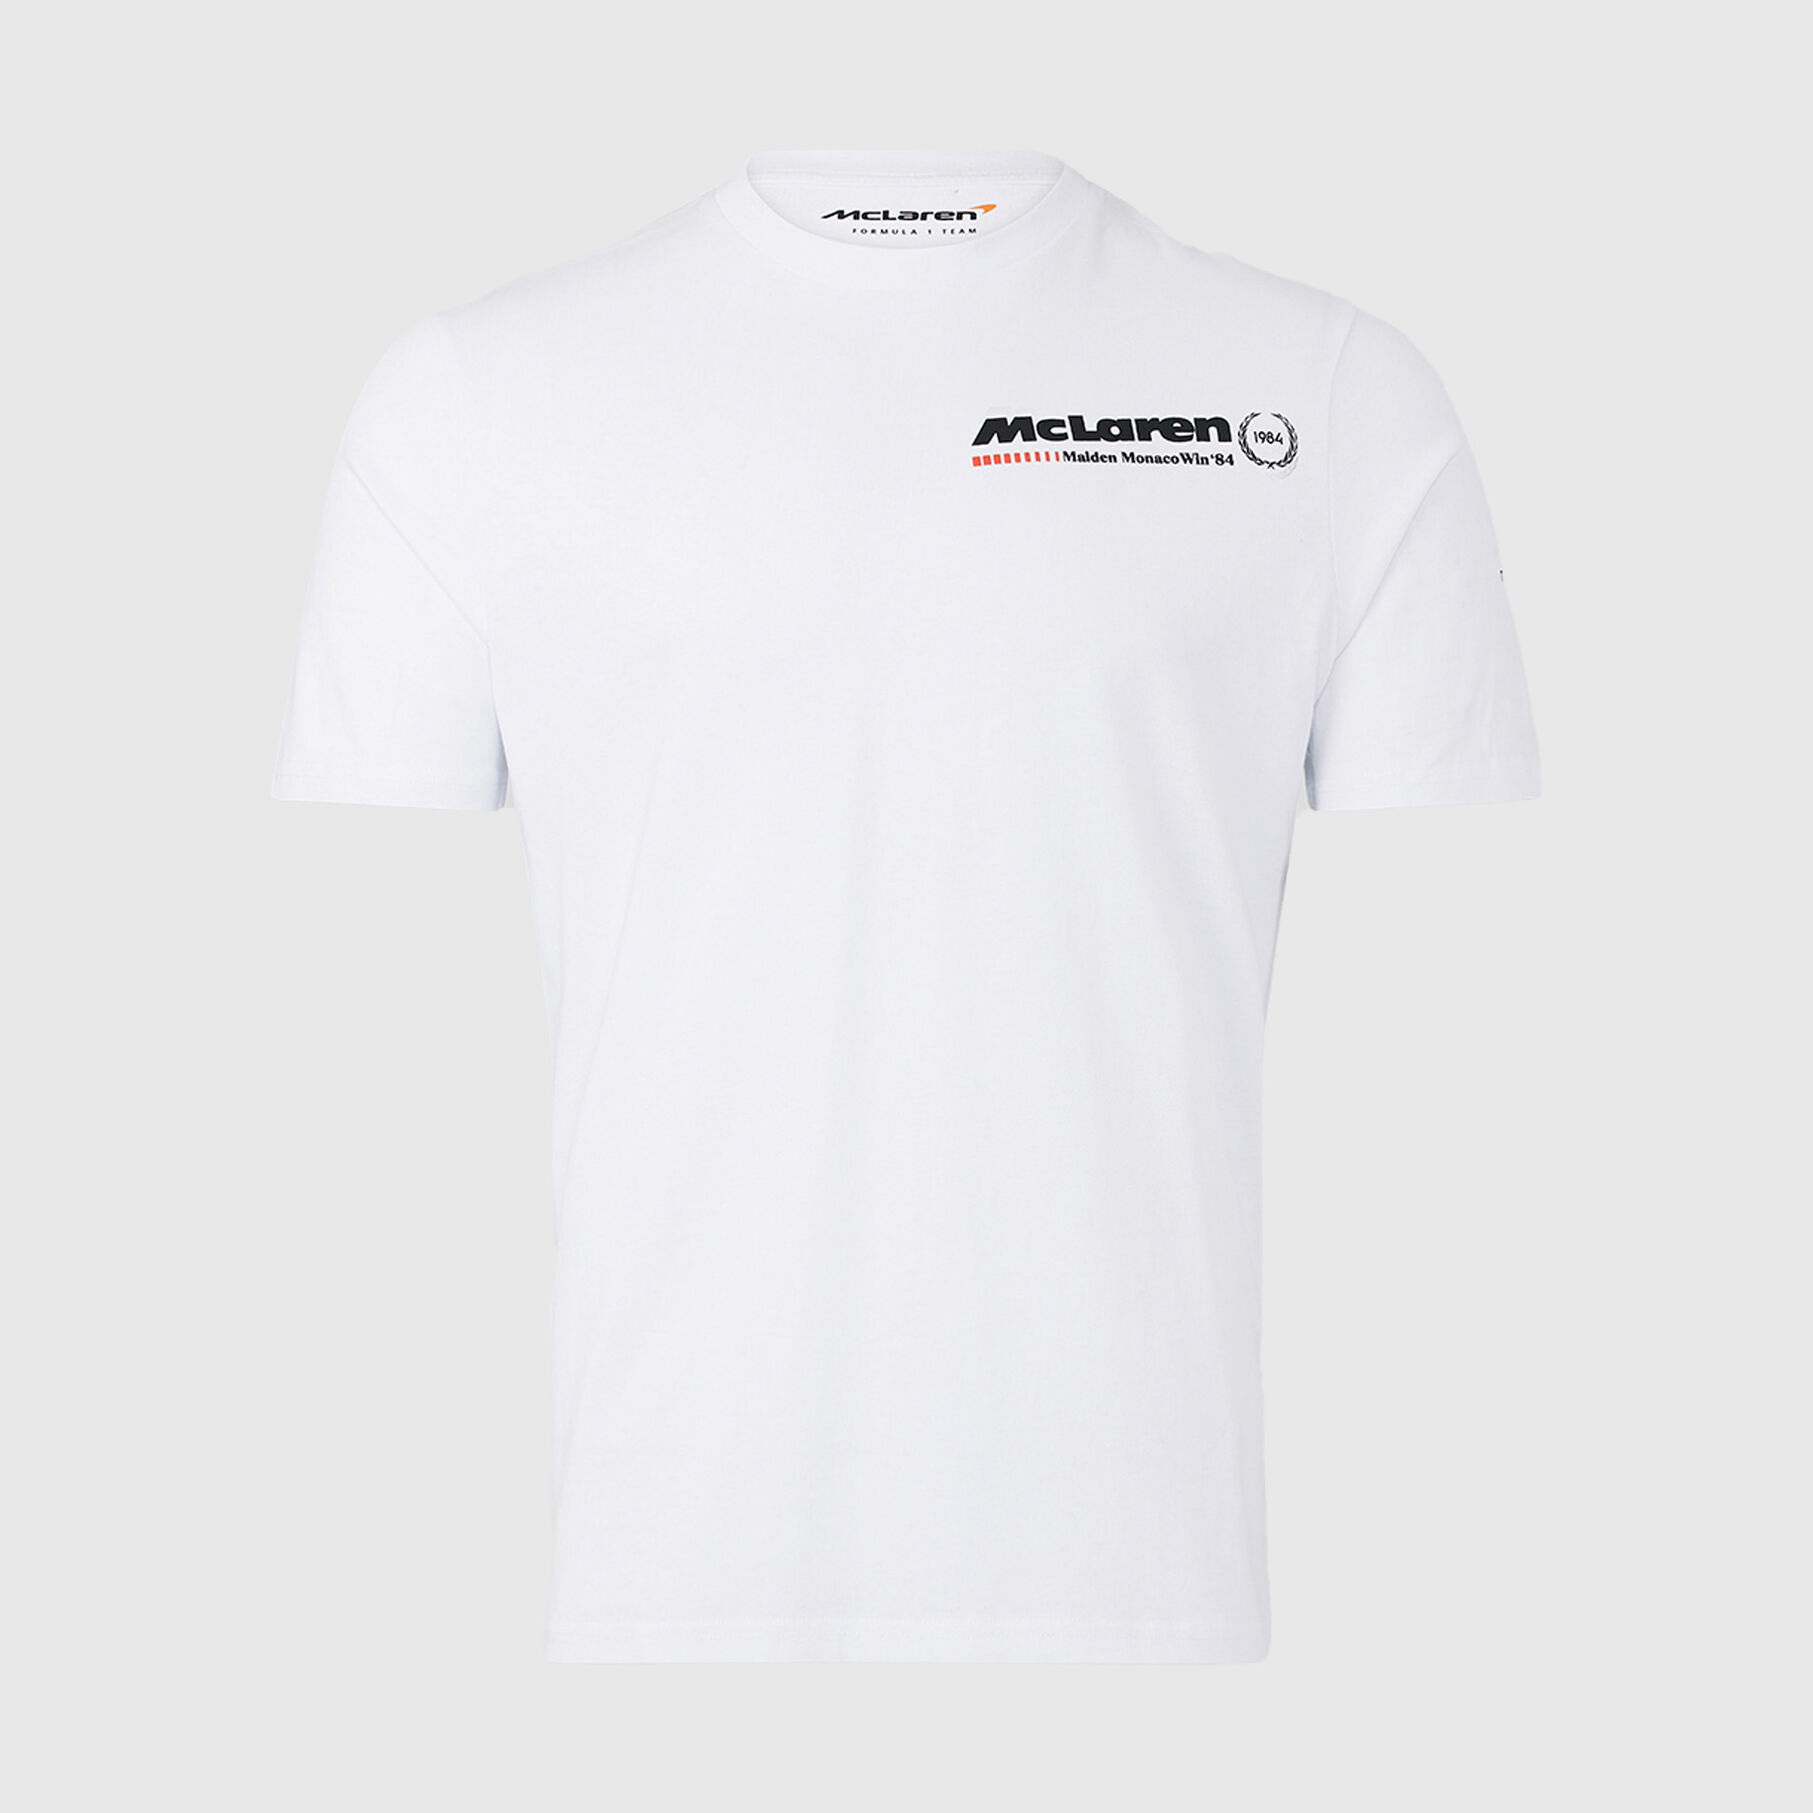 Triple Crown Monaco T-shirt - McLaren F1 | Fuel For Fans